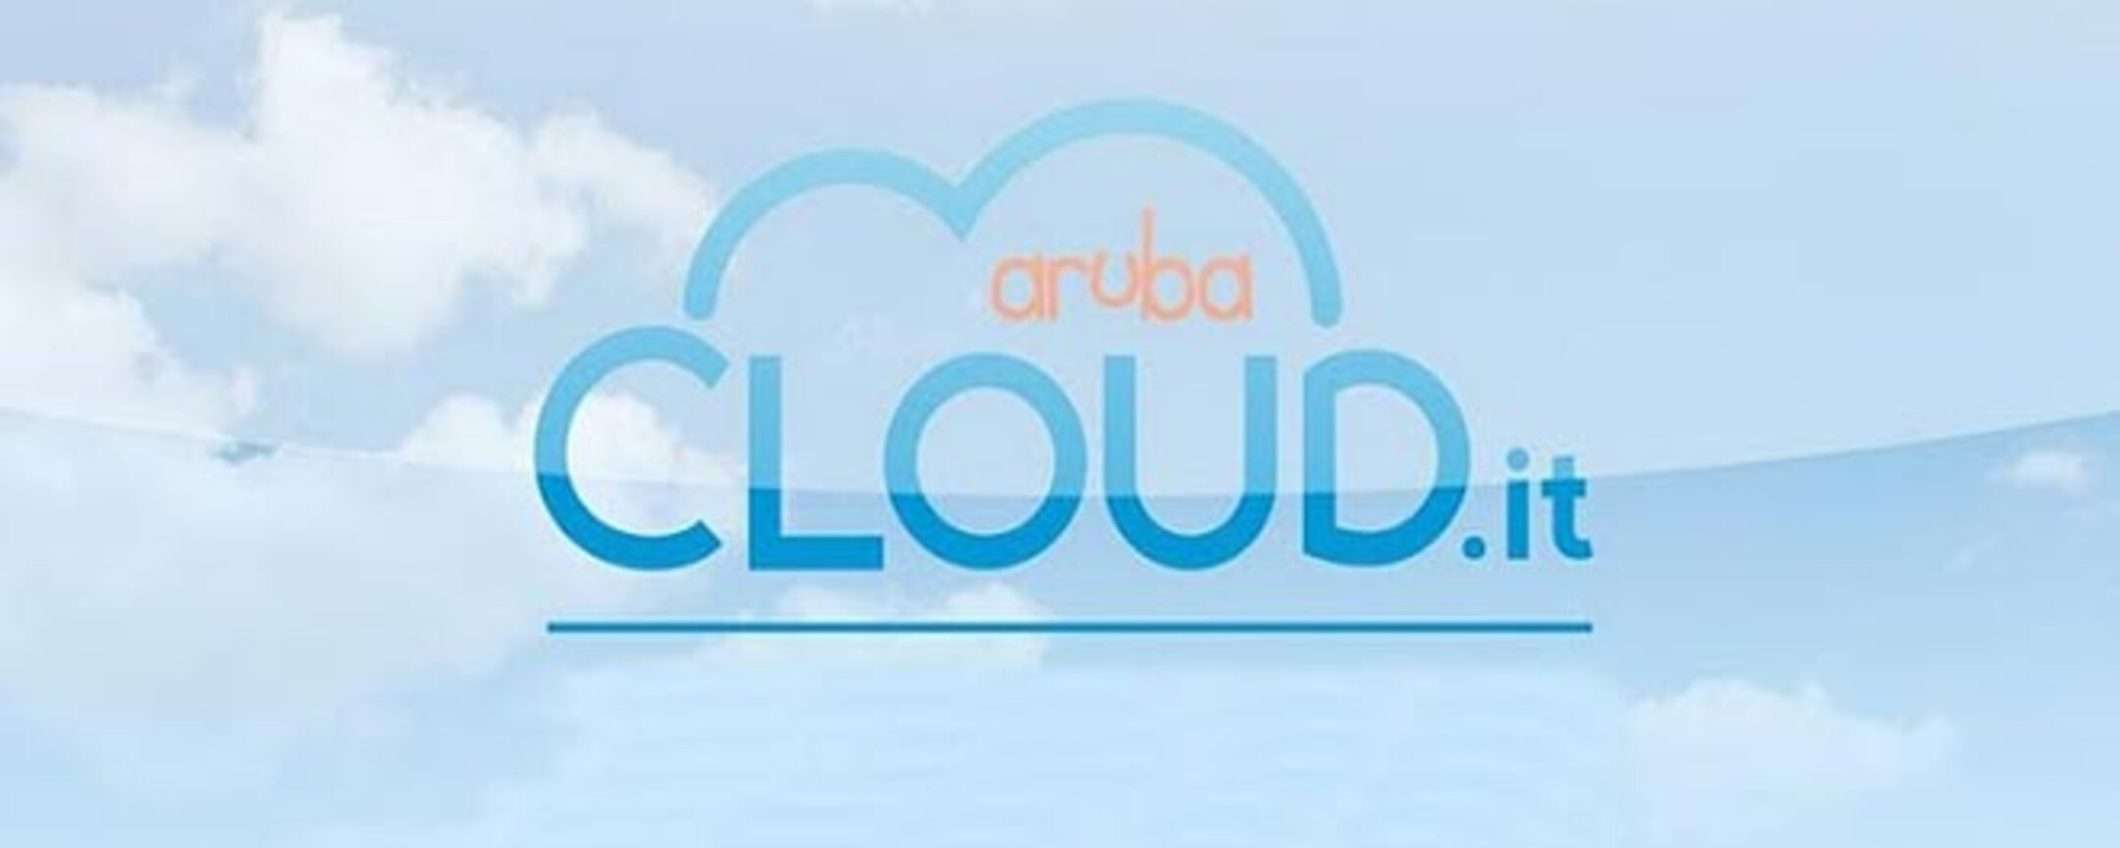 Servizio cloud di Aruba: fino a 100 euro di credito per provarlo